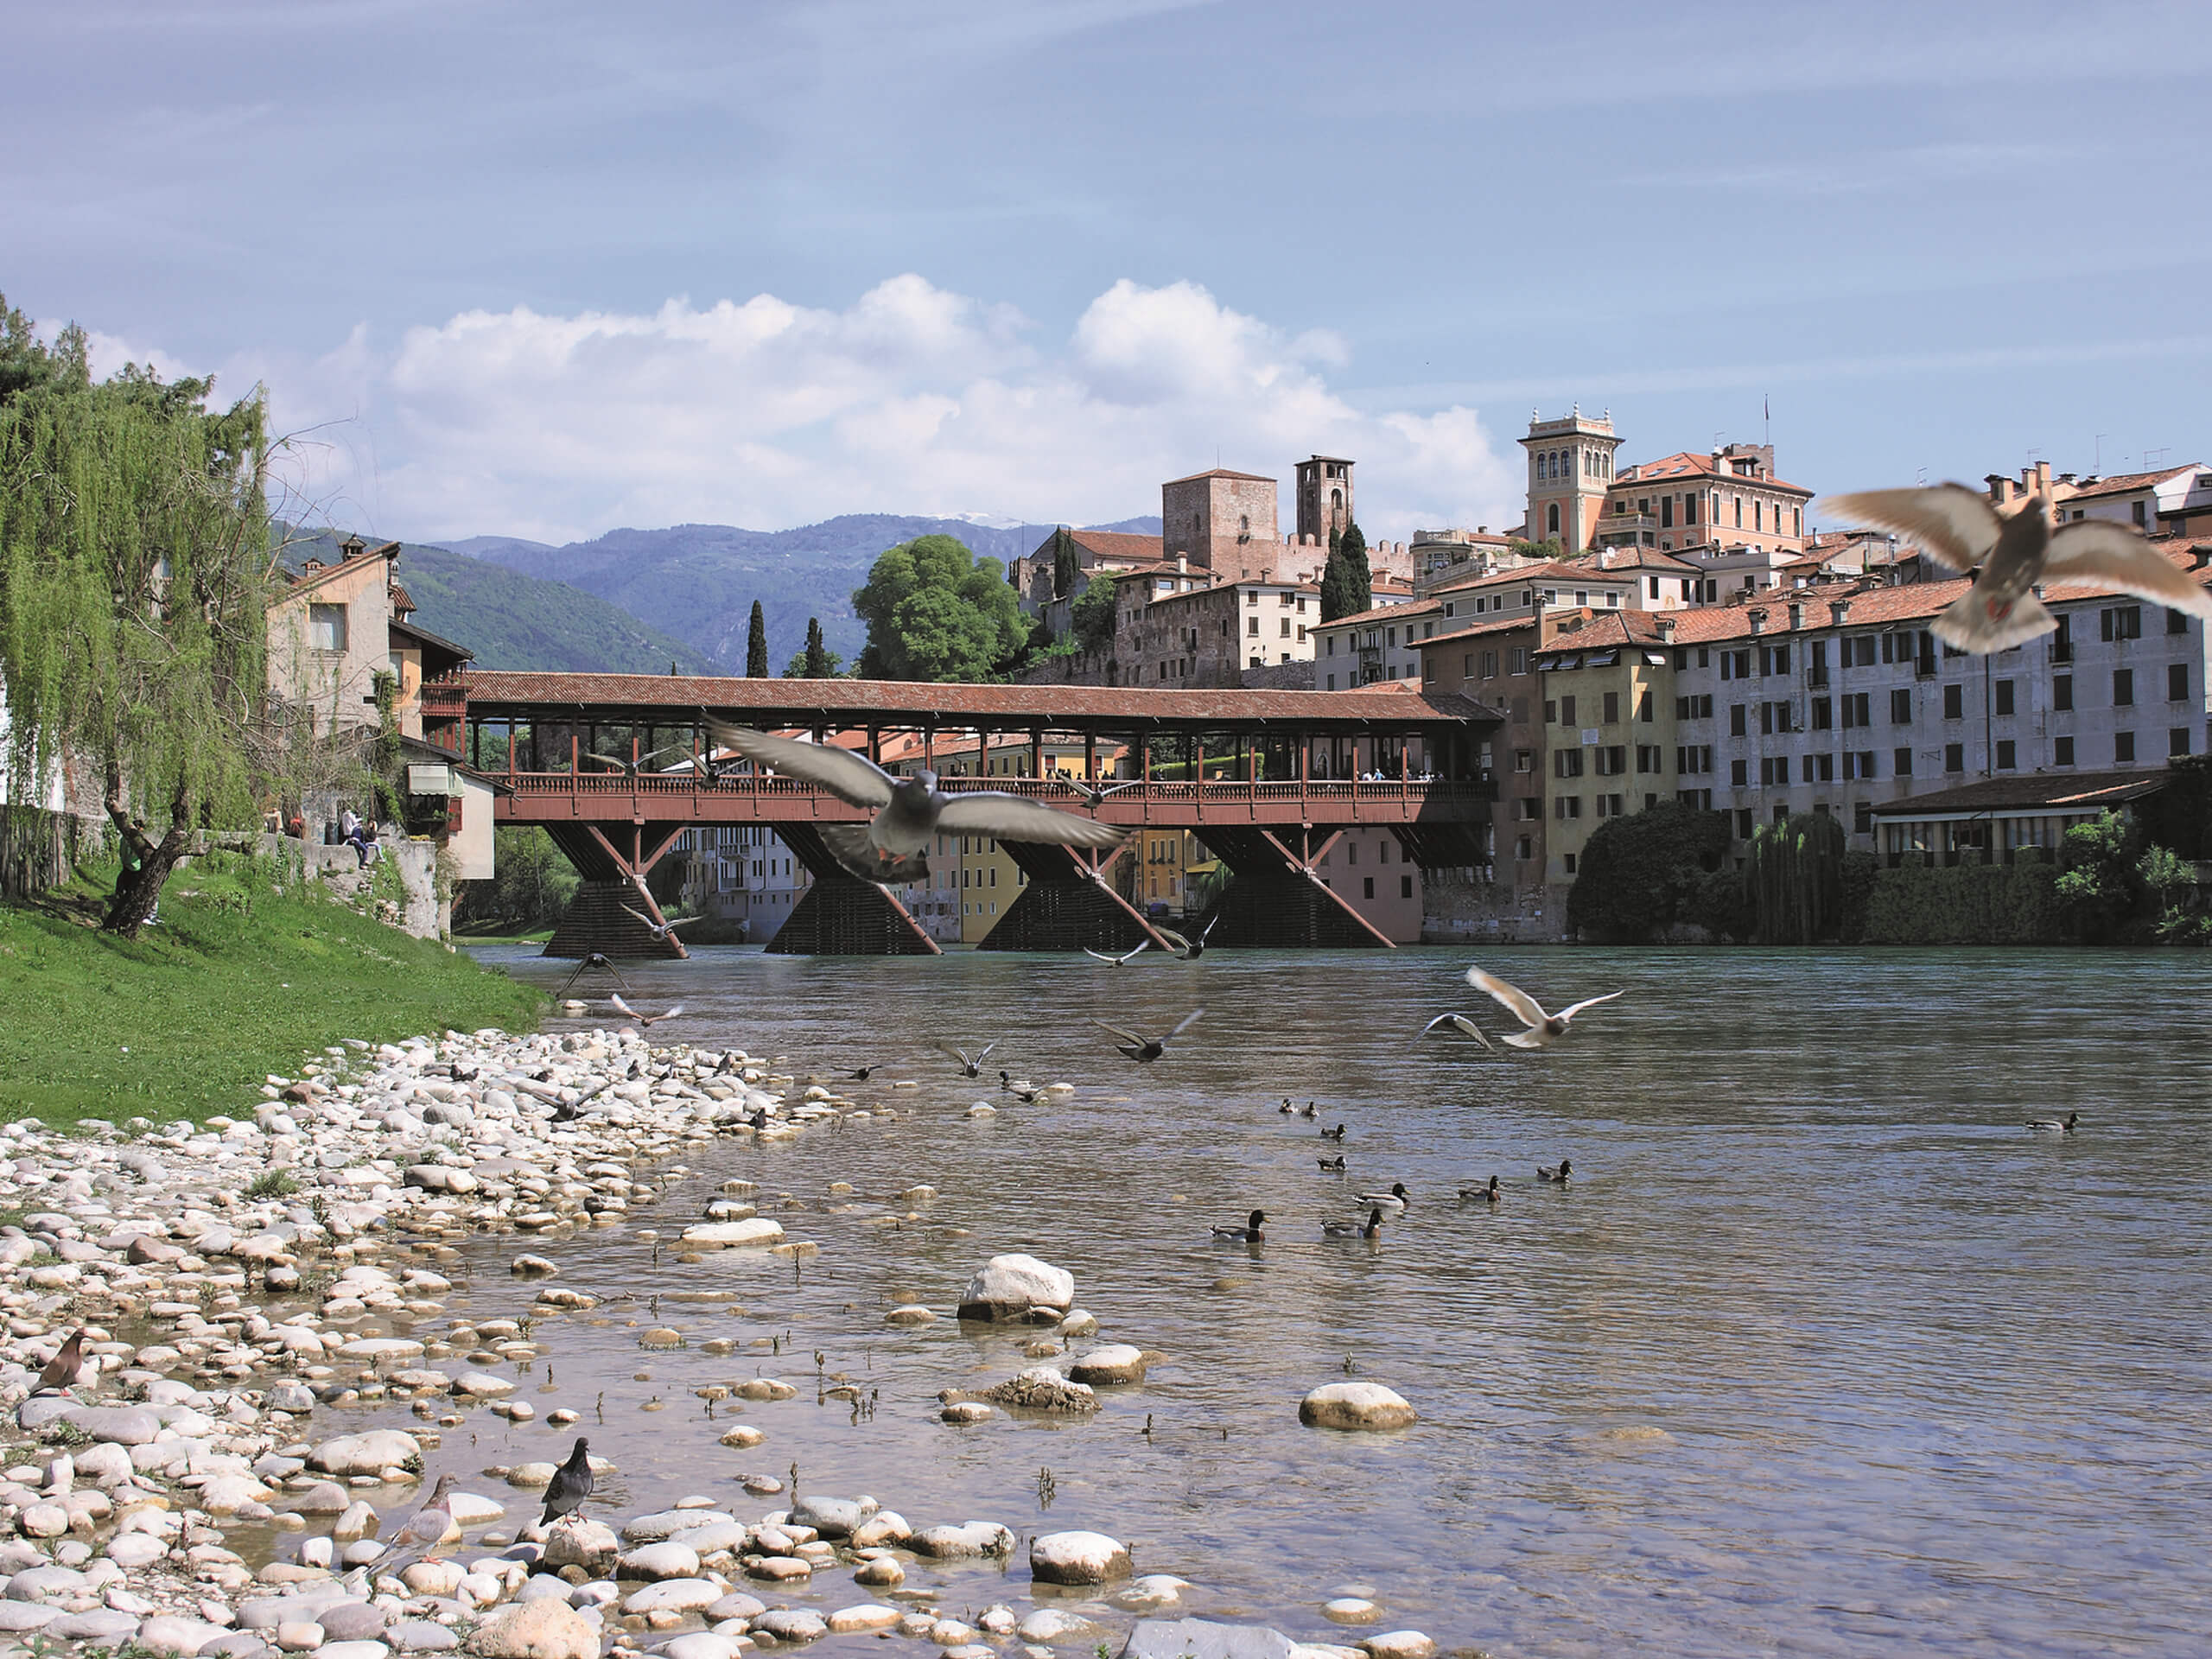 Brenta River in Italy